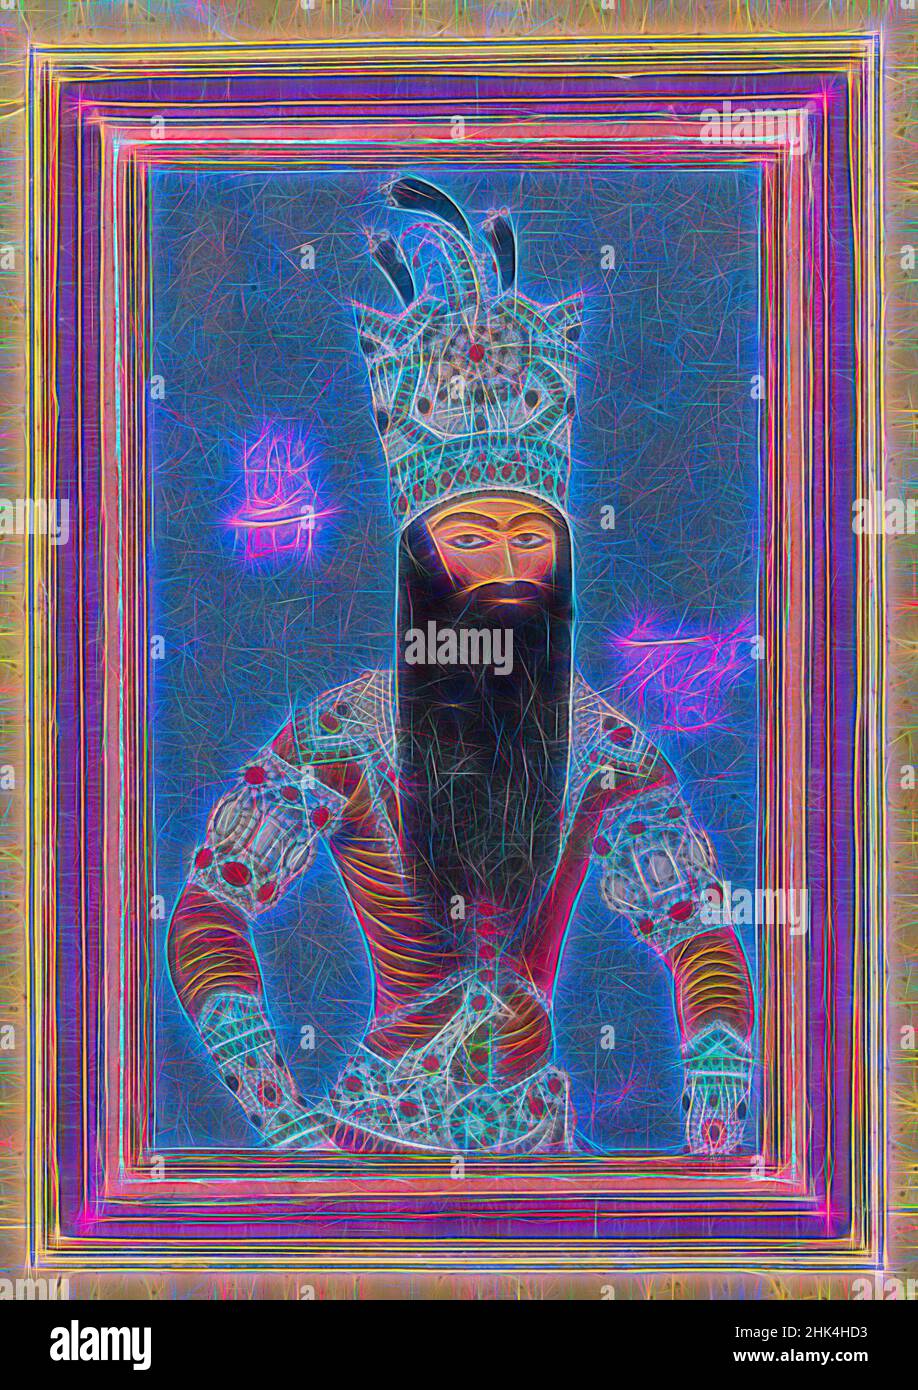 Inspiré par Portrait de Fath 'Ali Shah Qentra, MiHR 'Ali, iranien, actif ca. 1800-1830, encre, aquarelle opaque et or sur papier, Iran, 1815, période Qentra, période Qentra, 3 1/2 x 5 po, 8,9 x 12,7 cm, barbe, bleu, iran, roi, barbe longue, monarque, perse, perse, qentra, shah, réimaginé par Artotop. L'art classique réinventé avec une touche moderne. Conception de lumière chaleureuse et gaie, de luminosité et de rayonnement de lumière. La photographie s'inspire du surréalisme et du futurisme, embrassant l'énergie dynamique de la technologie moderne, du mouvement, de la vitesse et révolutionne la culture Banque D'Images